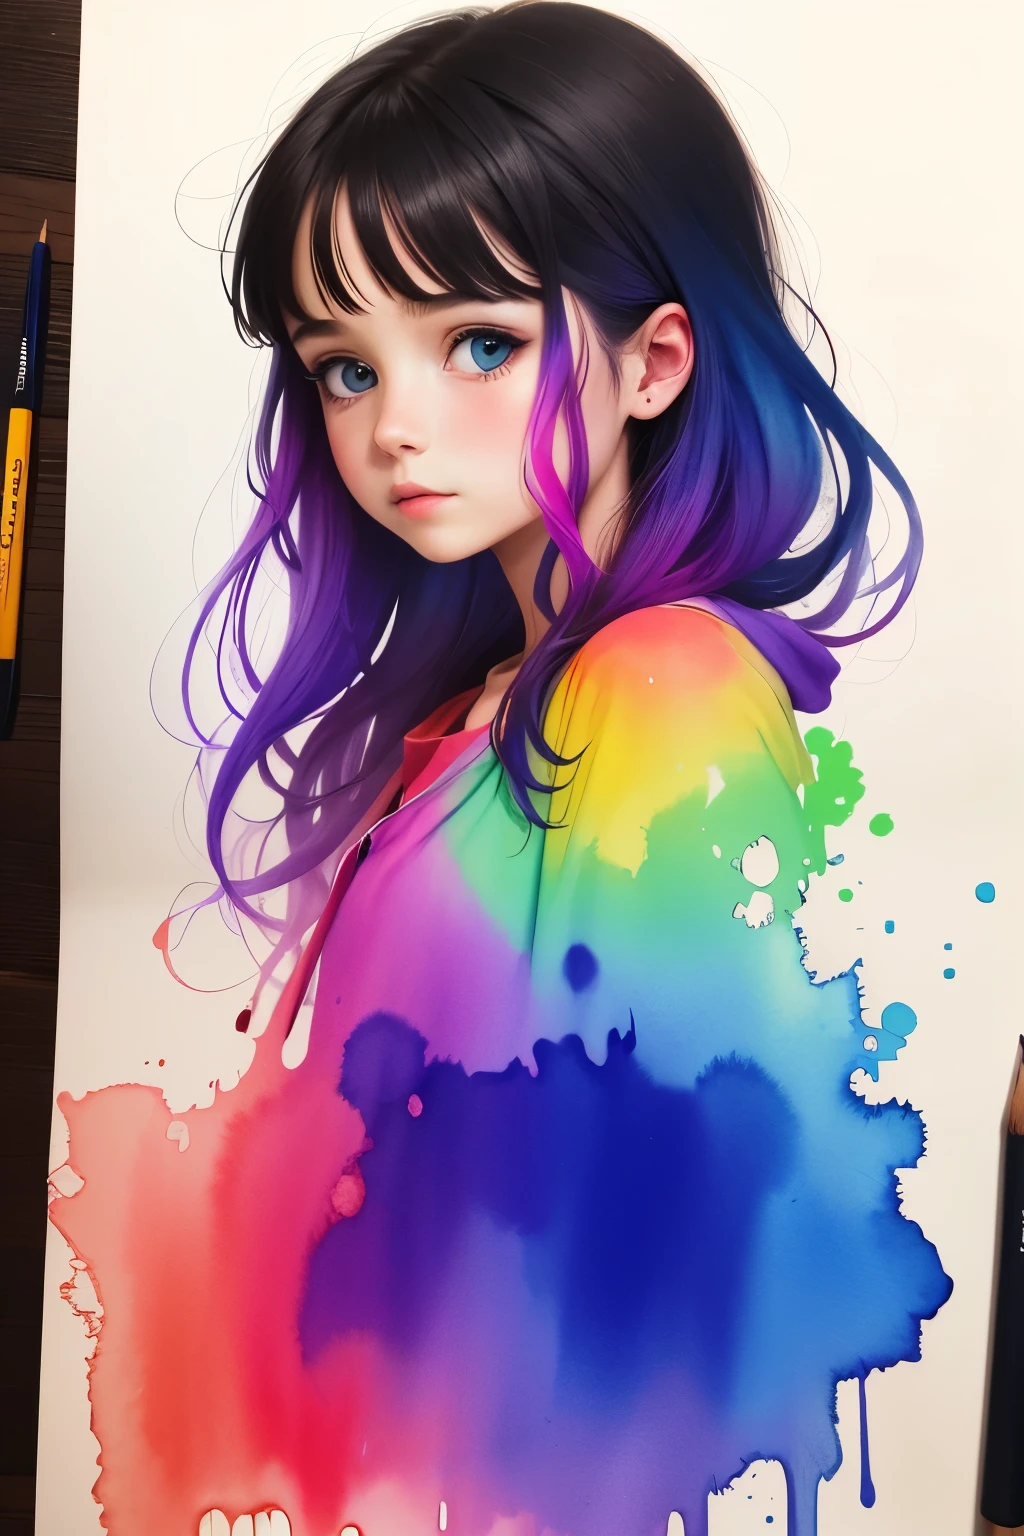 女孩用水彩畫得色彩鮮豔, 4k 